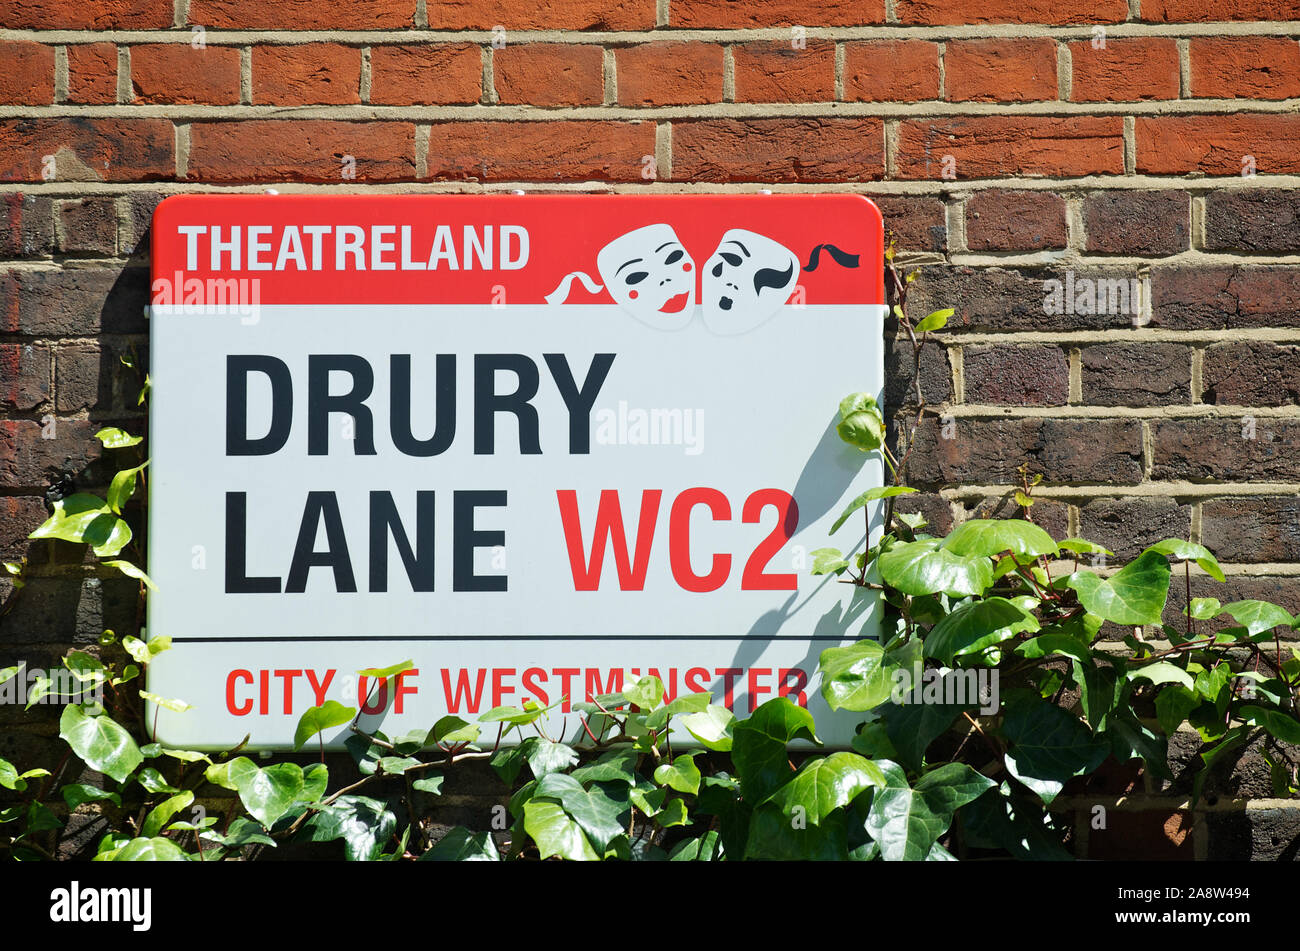 Londres - 25 de mayo de 2012: Firmar para Drury Lane ofrece un Theatreland designación con máscaras teatrales del sol de verano. Foto de stock